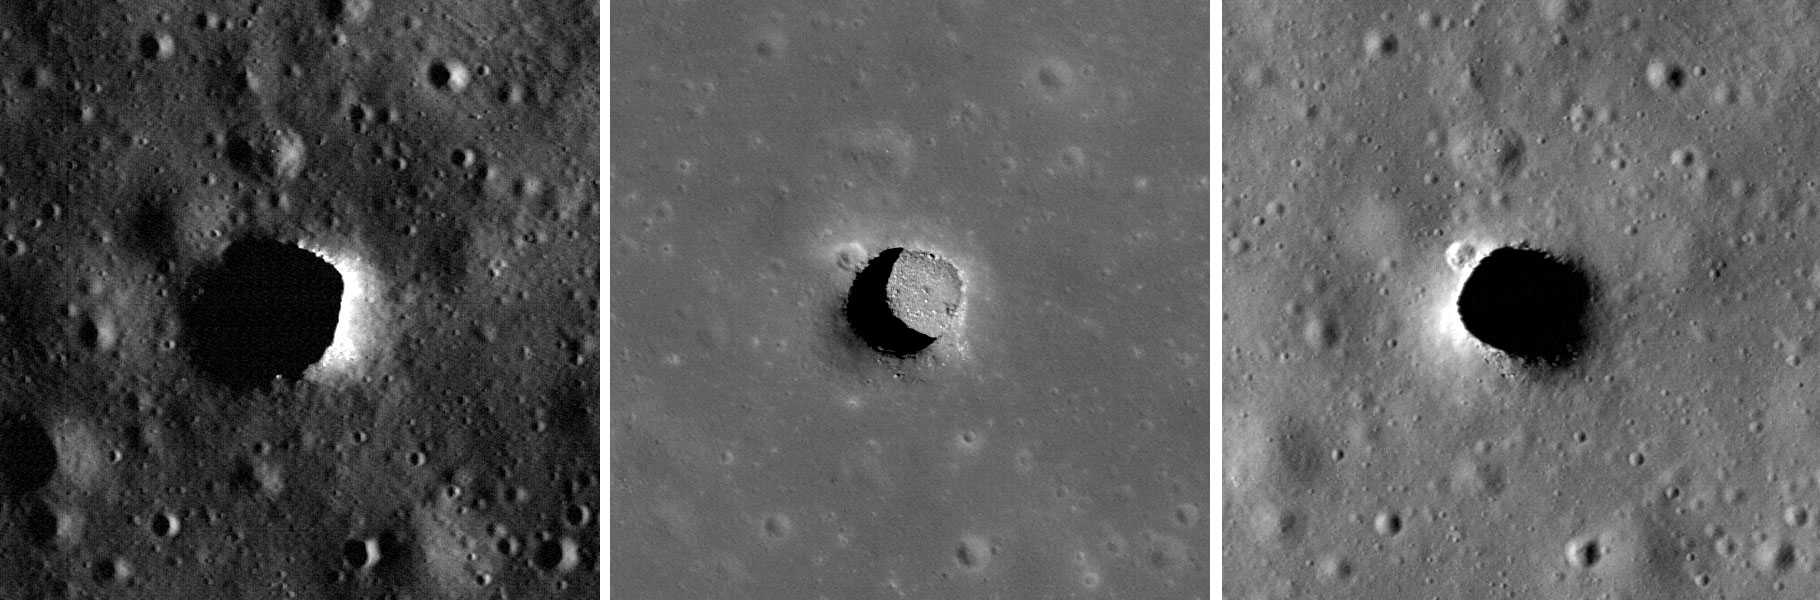 Три изображения карьера Мариус-Хиллз были сделаны камерой NASA Lunar Reconnaissance Orbiter Camera, на каждом из которых было очень разное освещение. Когда Солнце поднимается высоко над дном карьера Мариус-Хиллз, ученые могут видеть дно карьера. Эта яма имеет глубину примерно 34 метра и ширину 65 метров (213 футов на 295 футов). Изображение предоставлено: NASA/GSFC/Университет штата Аризона.